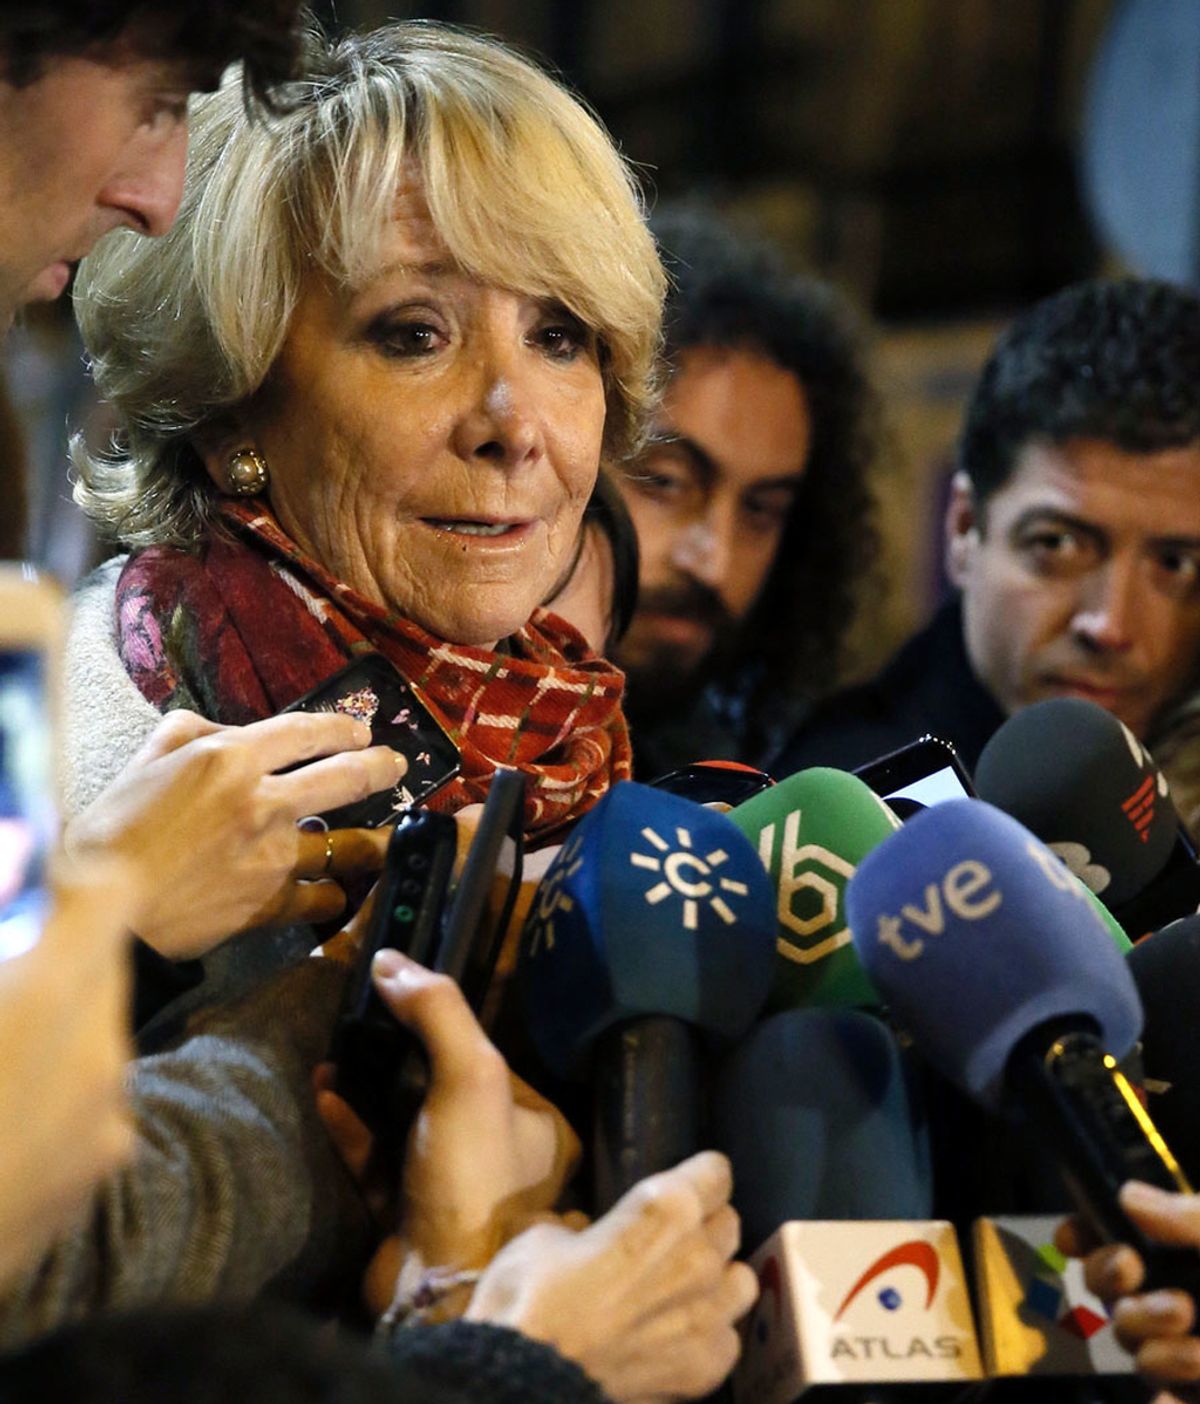 Las explicaciones de Aguirre tras los resgistros en la sede del PP de Madrid